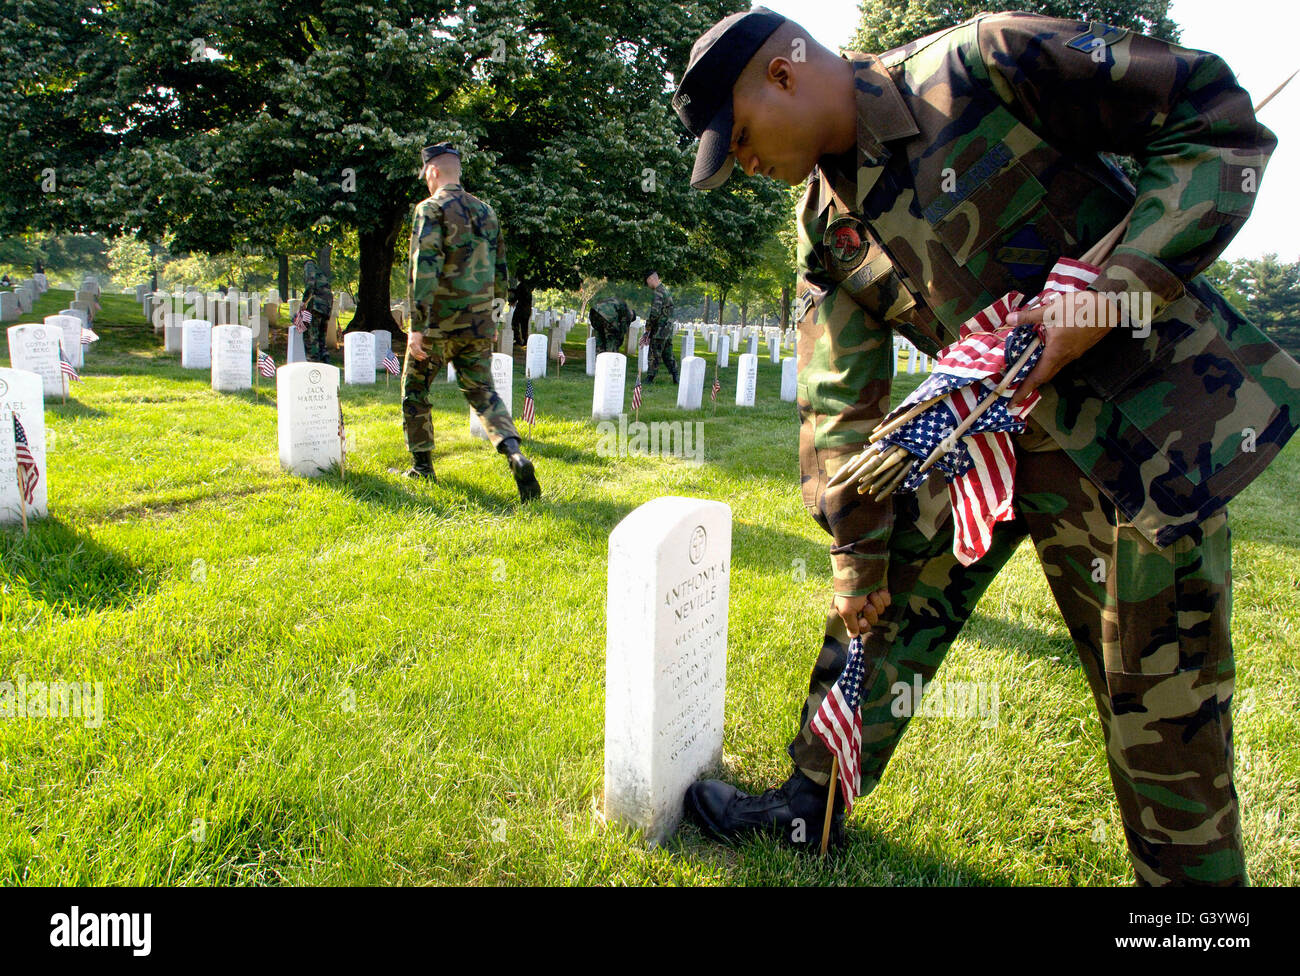 Ein Soldat stellt eine Flagge vor einem Grabstein. Stockfoto